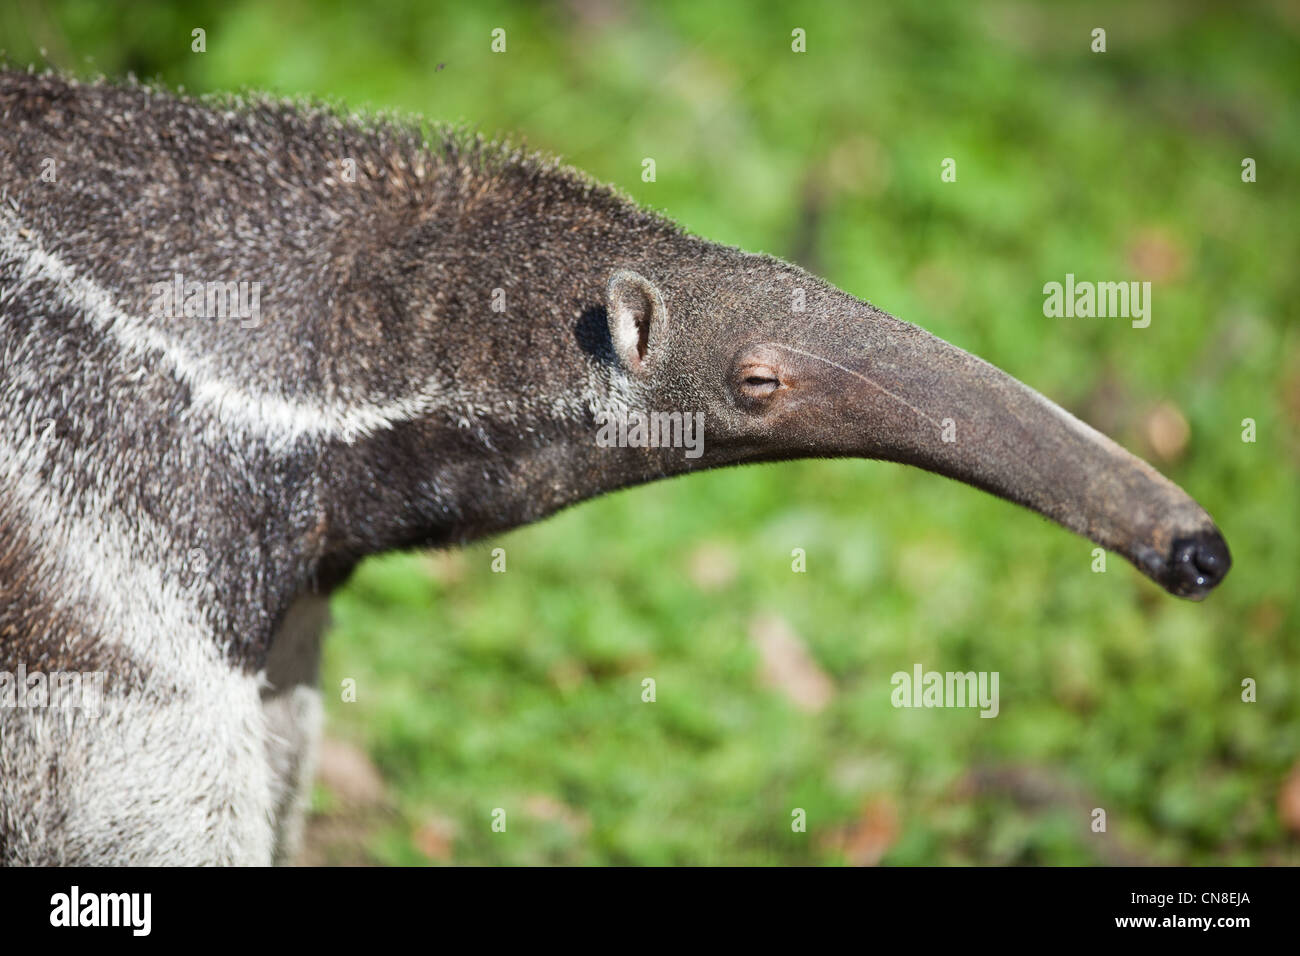 Giant Anteater (Myrmecophaga tridactyla) Stock Photo